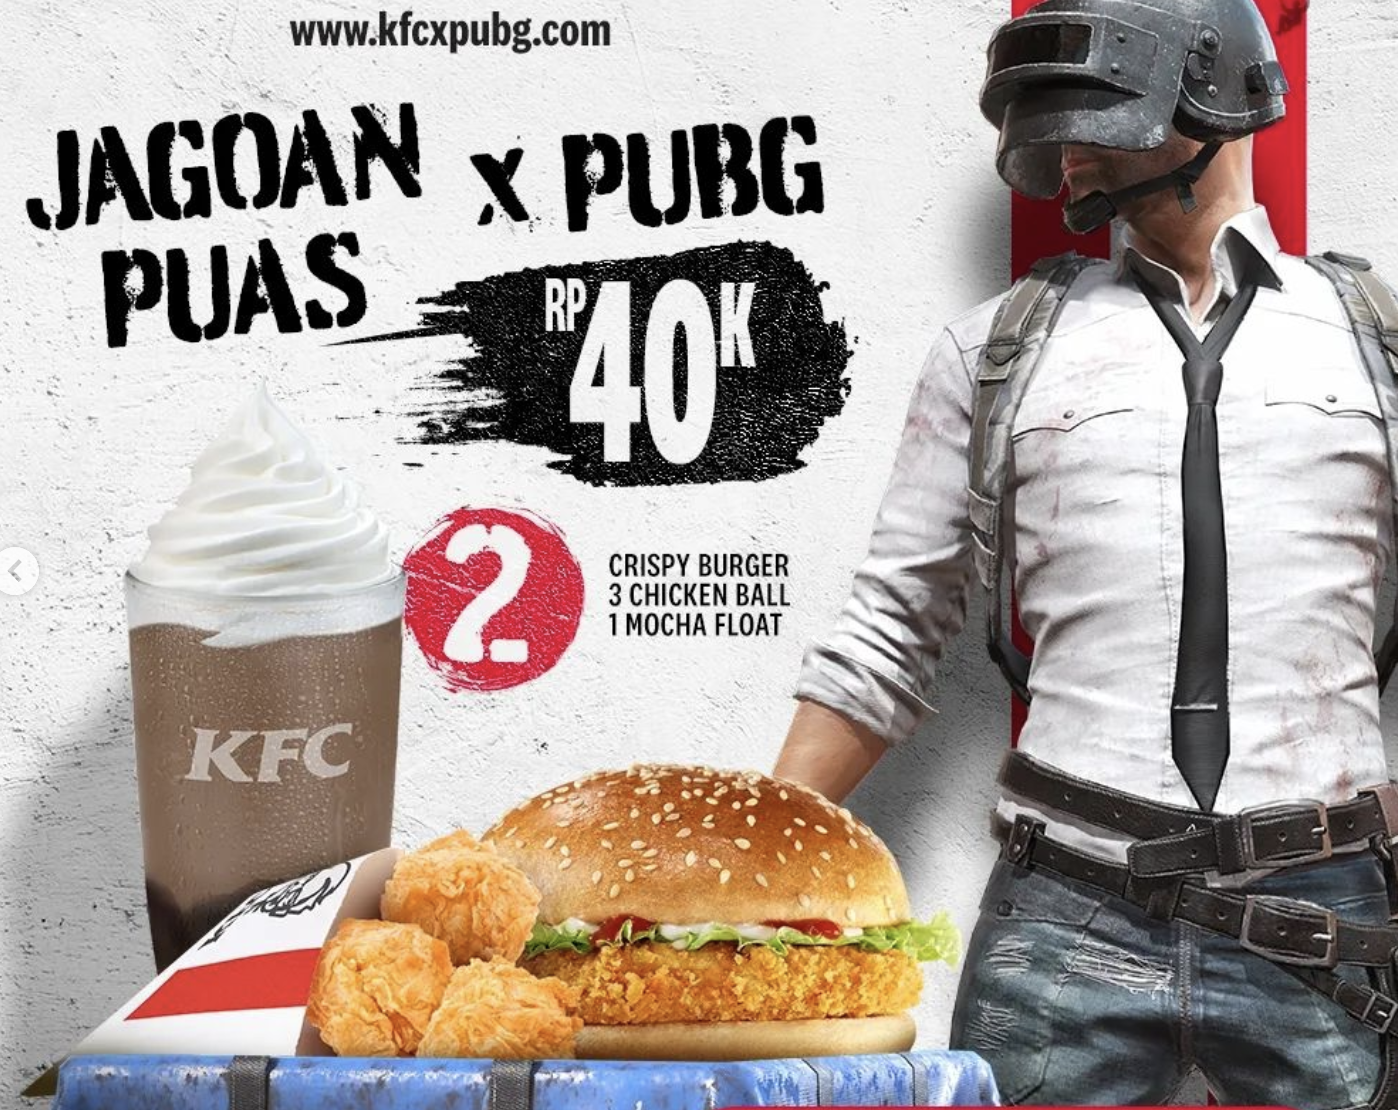 Promo "KFC x PUBG Mobile" Paket Jagoan Puas 2 KFC x PUBG Mobile Foto: Official KFC/Instagram